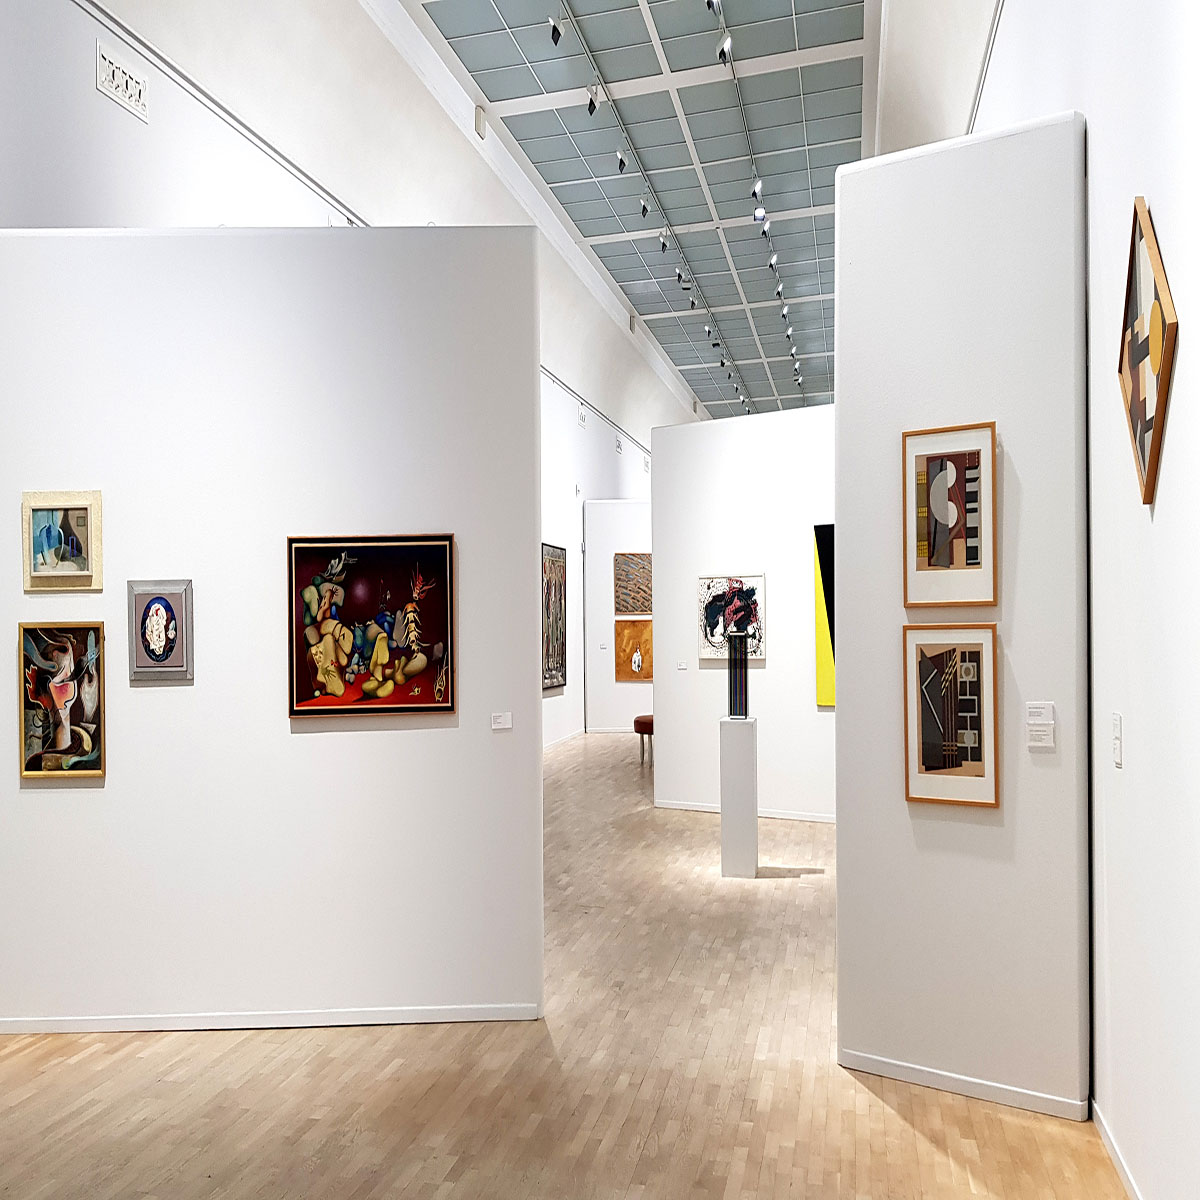 Foto som föreställer galleri 2 på Konstmuseet med tavlor som hänger på väggarna och en skulptur på ett podium.